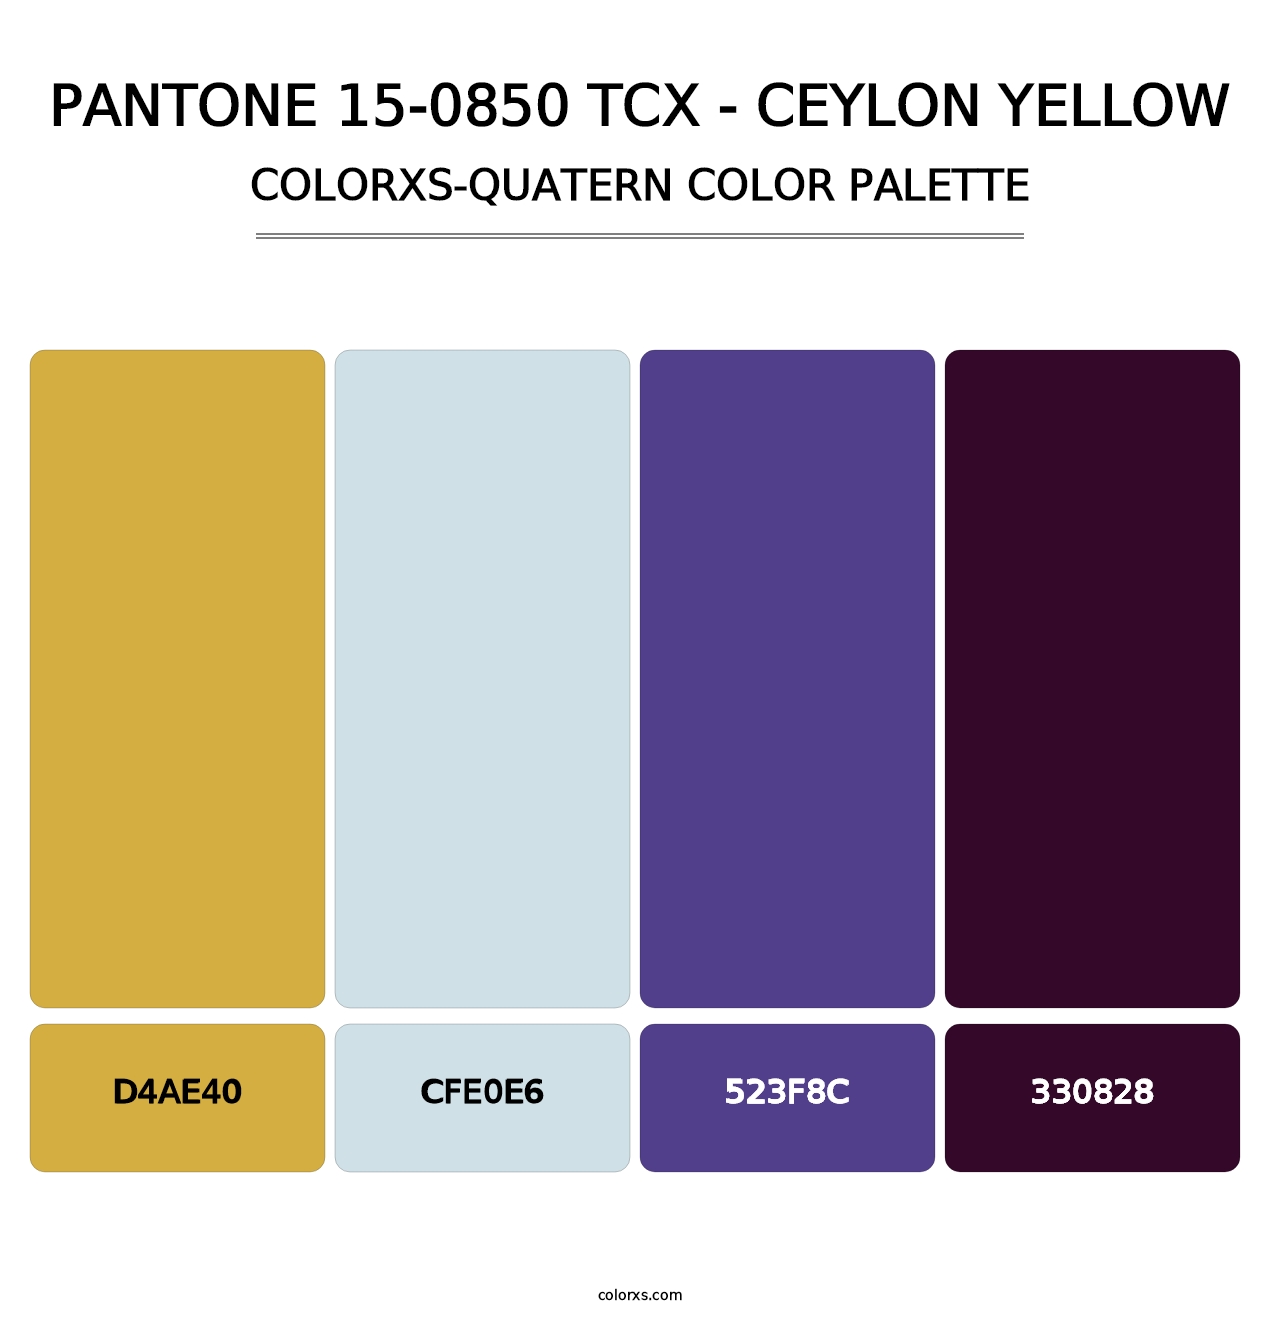 PANTONE 15-0850 TCX - Ceylon Yellow - Colorxs Quatern Palette